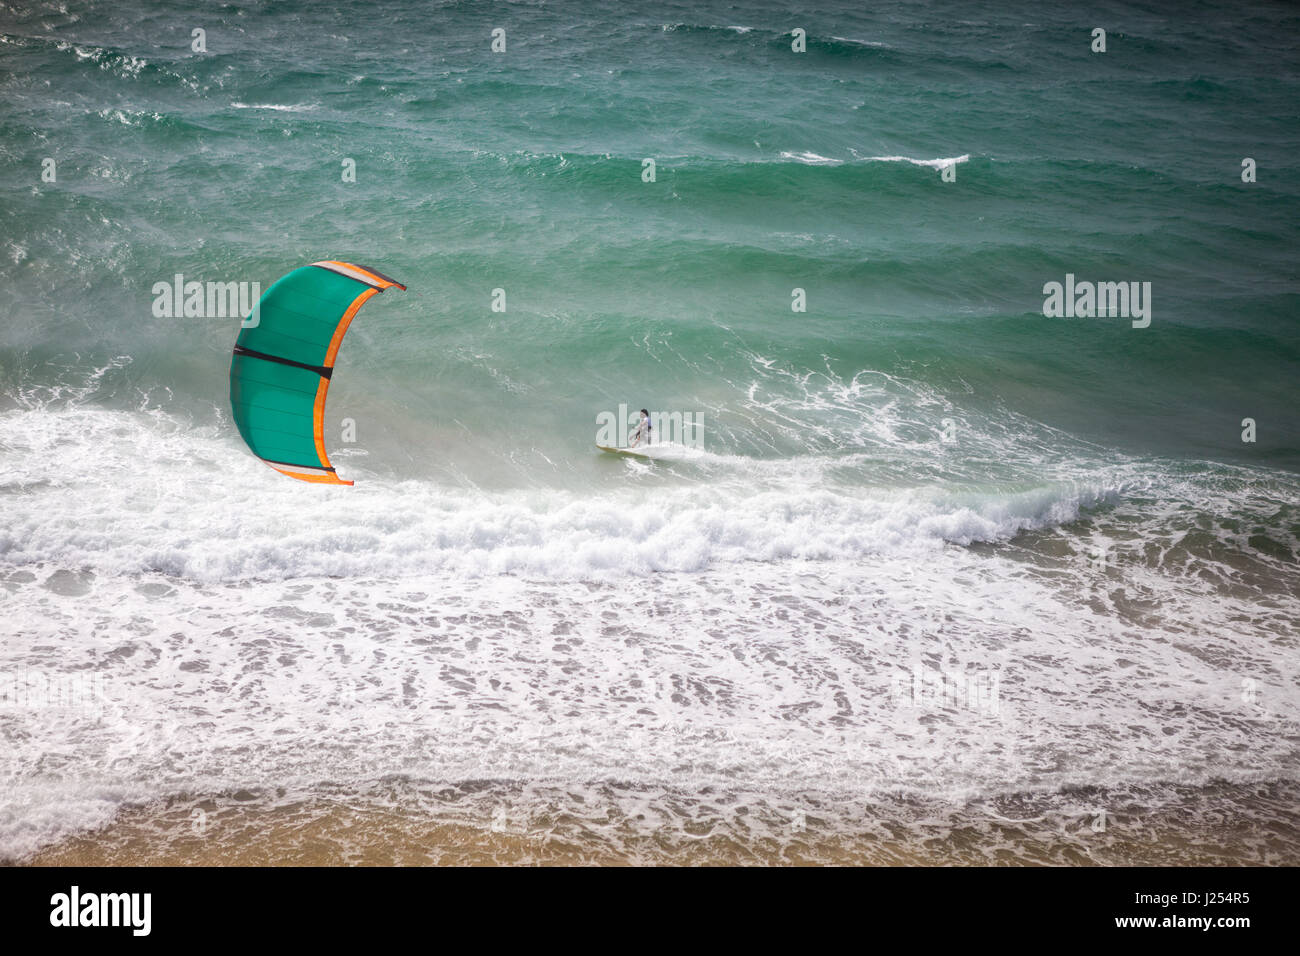 Il kite surf in una giornata di sole, kite surfer in azione Foto Stock